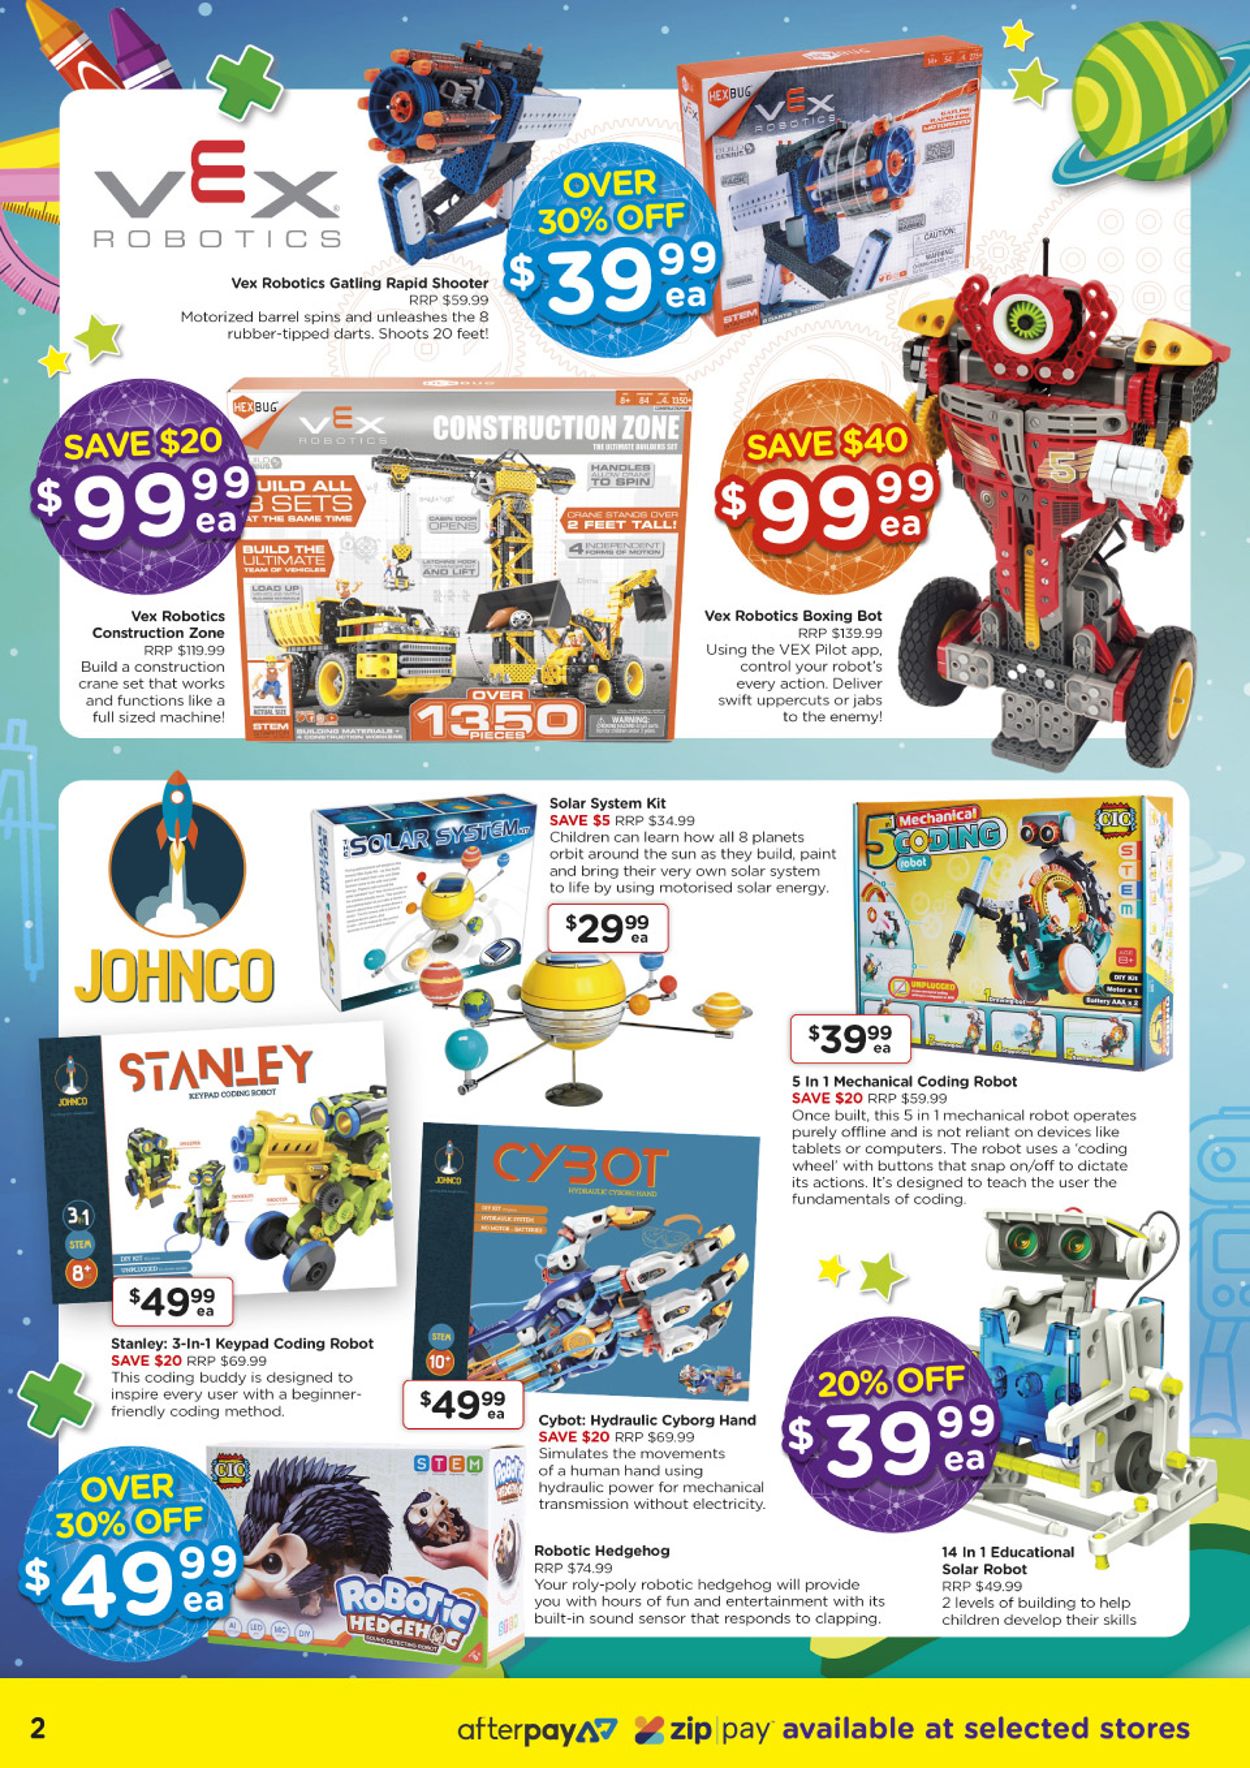 Toyworld Catalogue from 07/10/2020